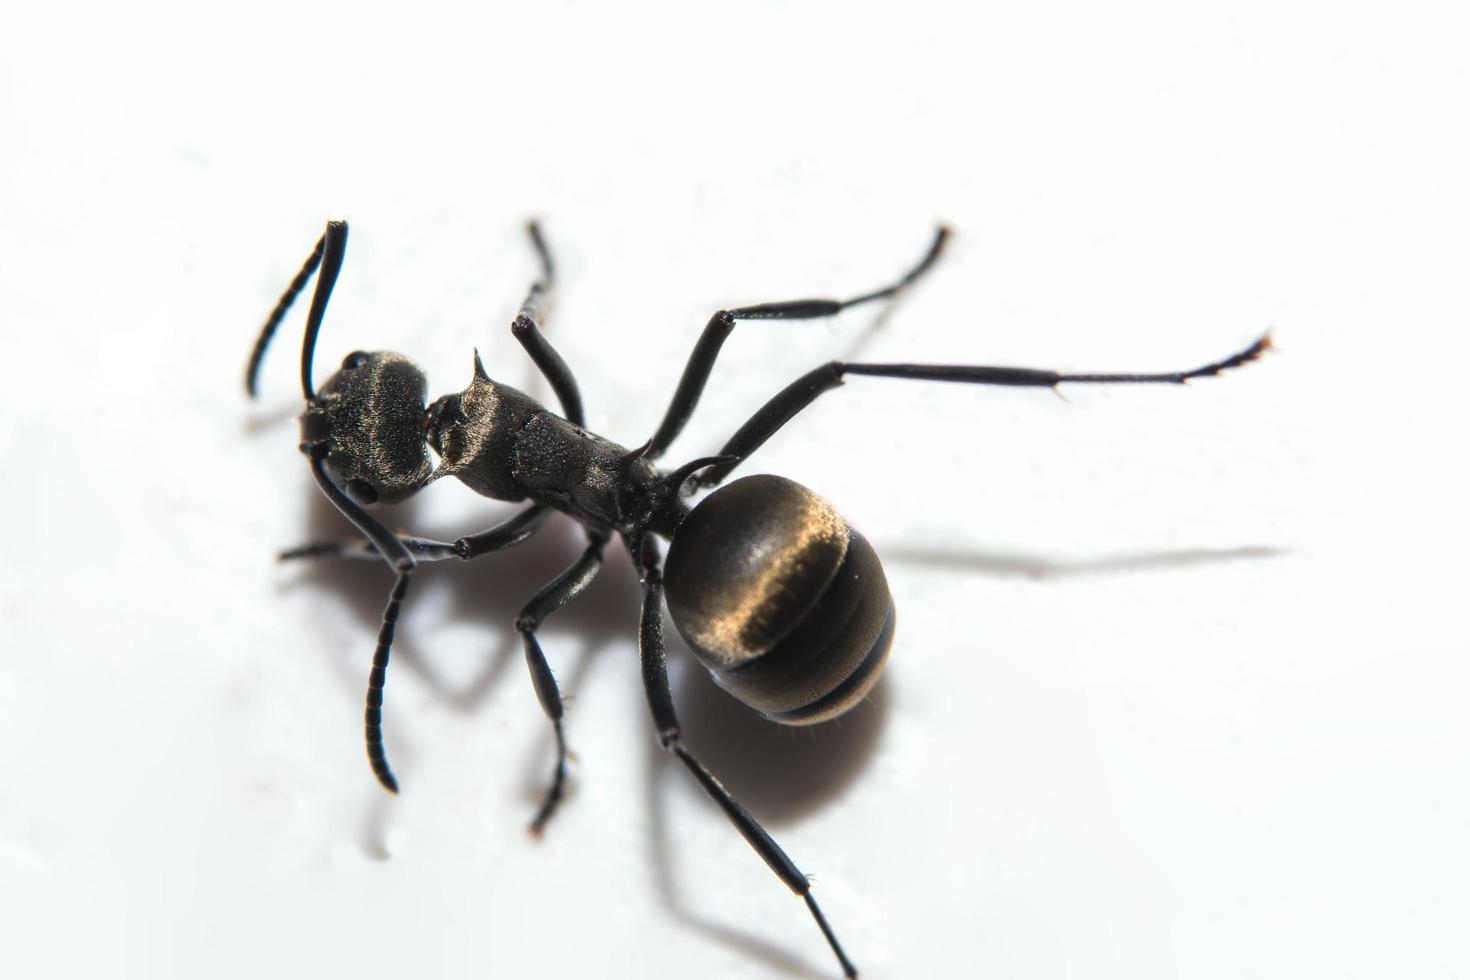 Black ant on white background photo